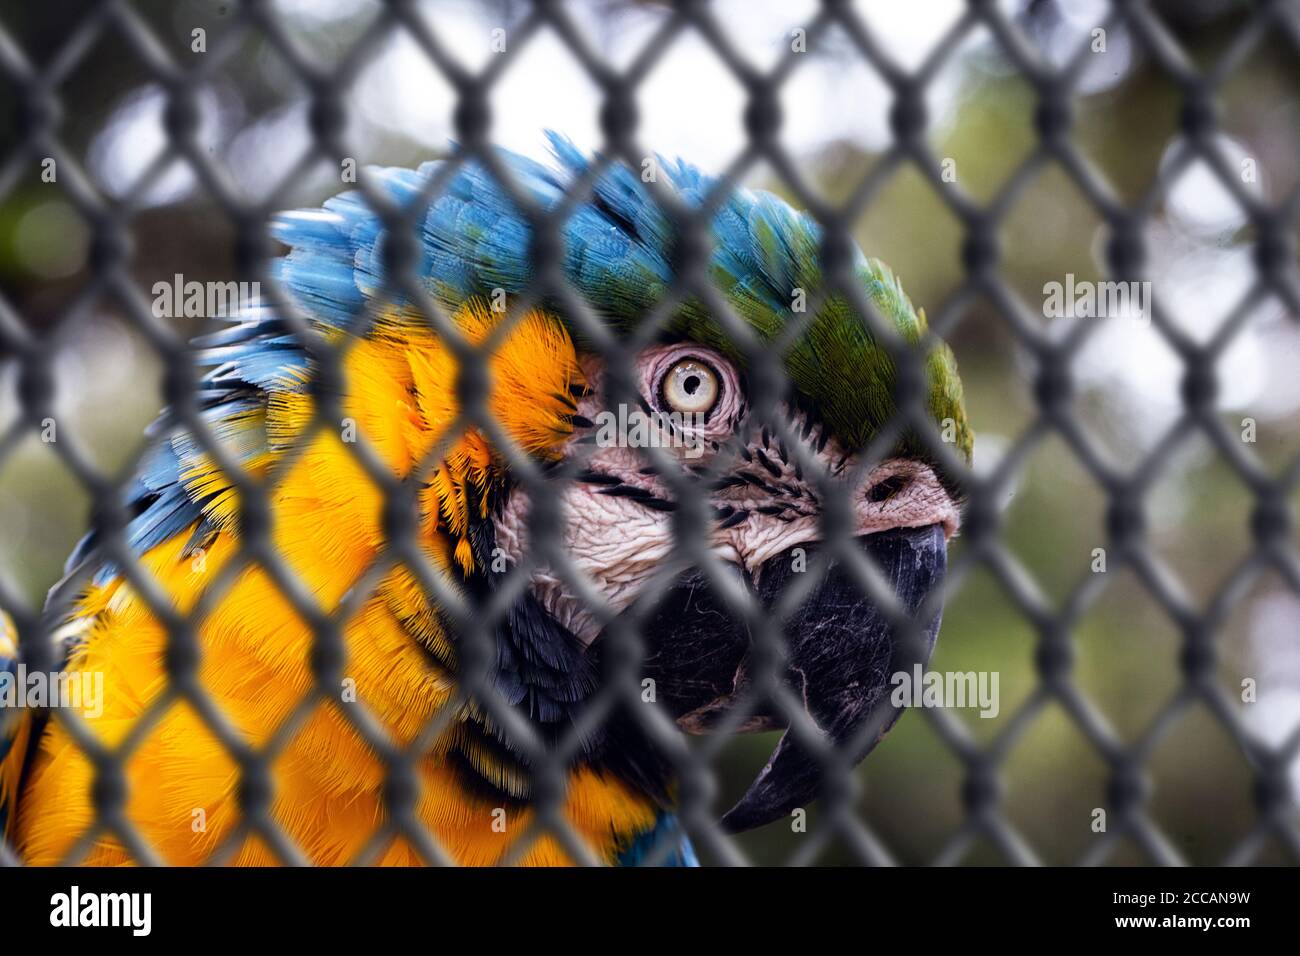 Alter Ara-canindé, mit gelben und blauen Bäuchen, der in Gefangenschaft misshandelt wurde. Verwundete Vogel, Tierhandel. Konzept des Tieres hinter Gittern, imp Stockfoto